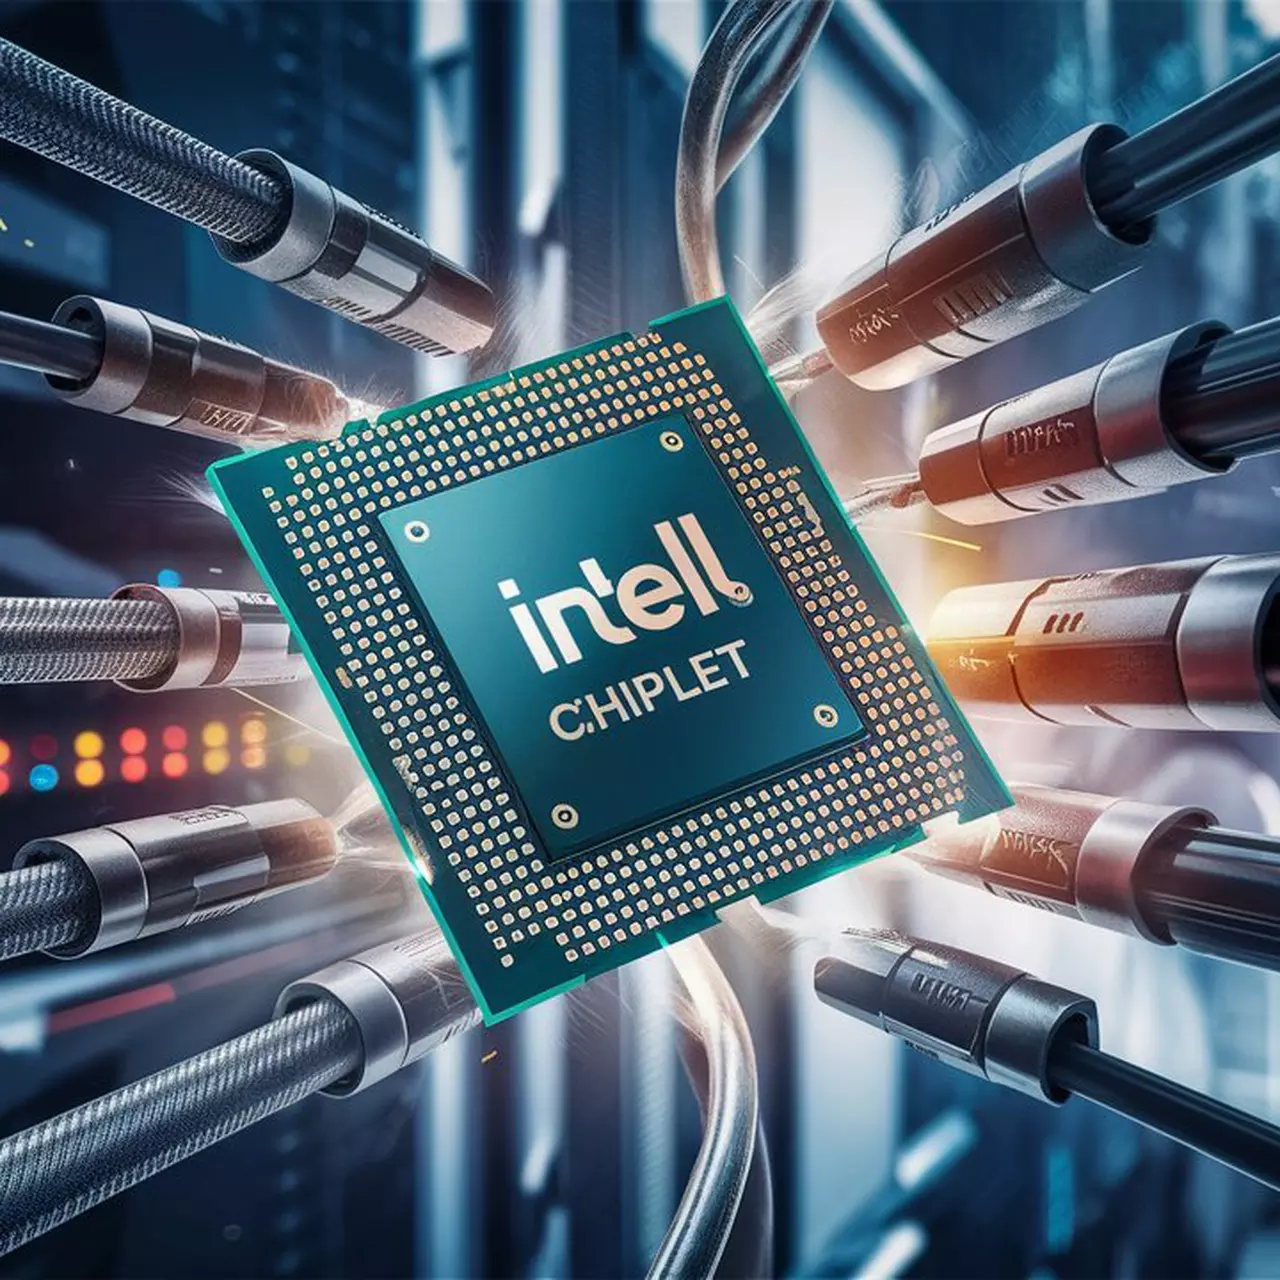 Intel представил инновационный чиплет для высокоскоростной передачи данных